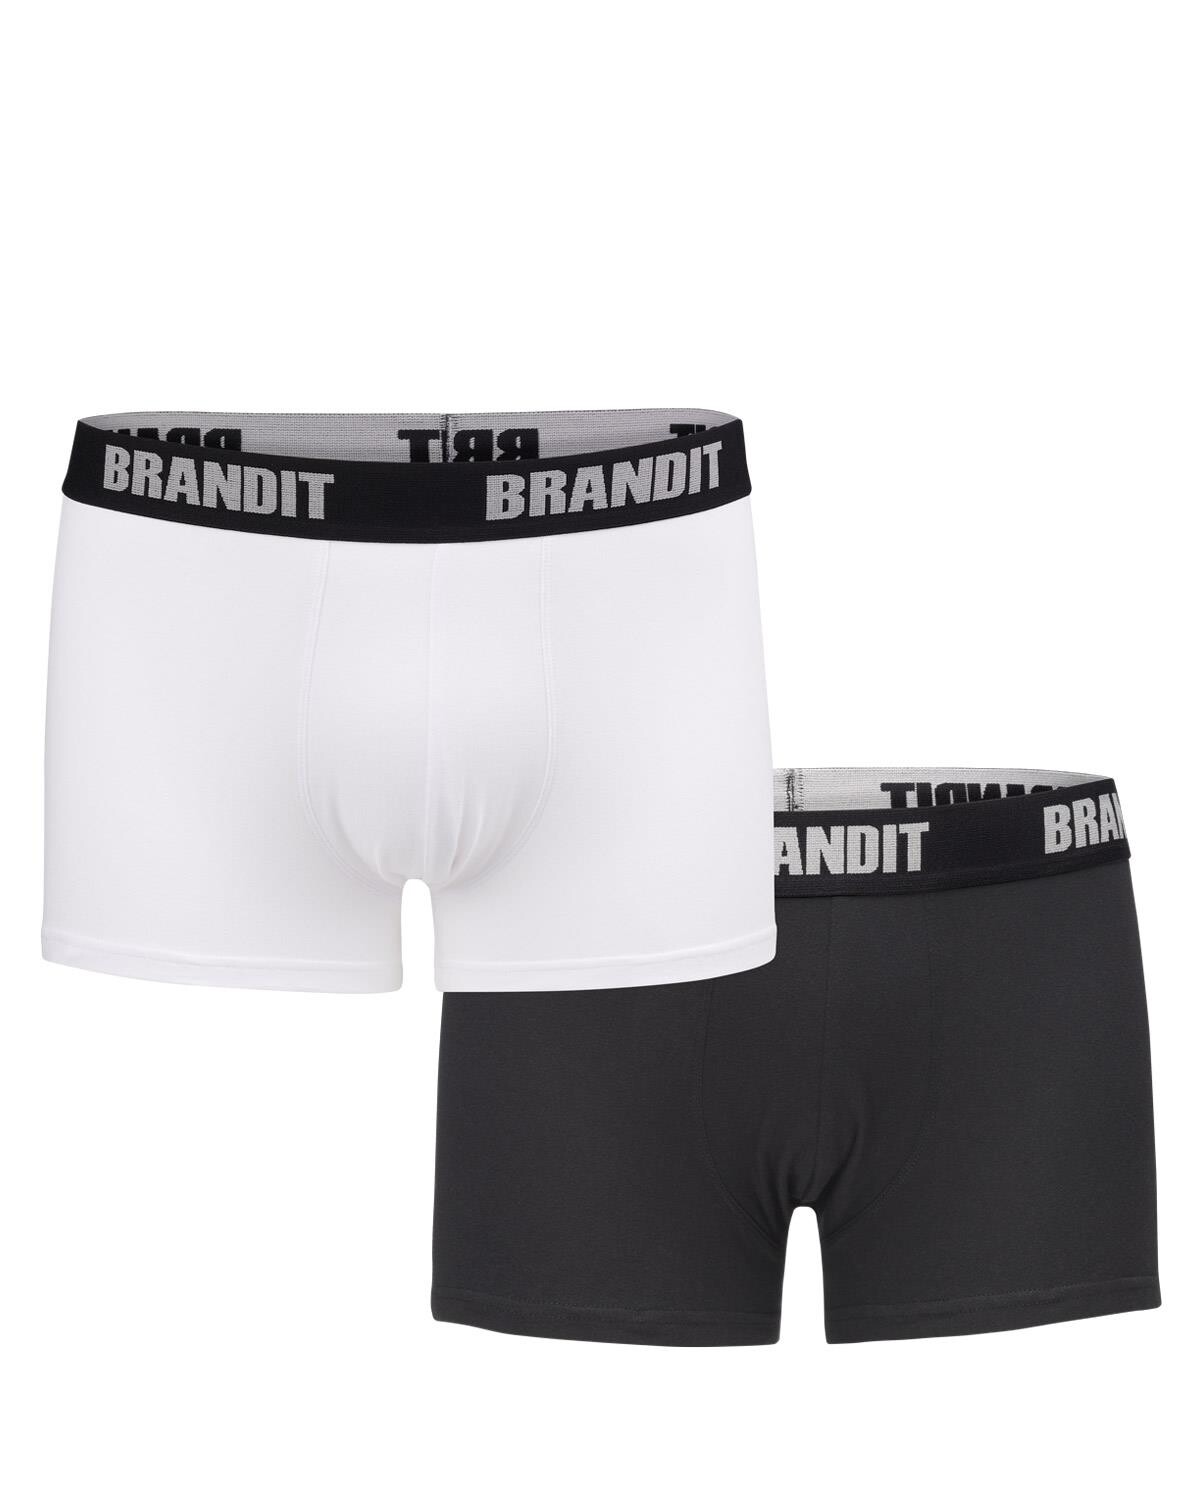 Brandit Boxershorts Logo 2er Pack (Hvid / Sort, M)